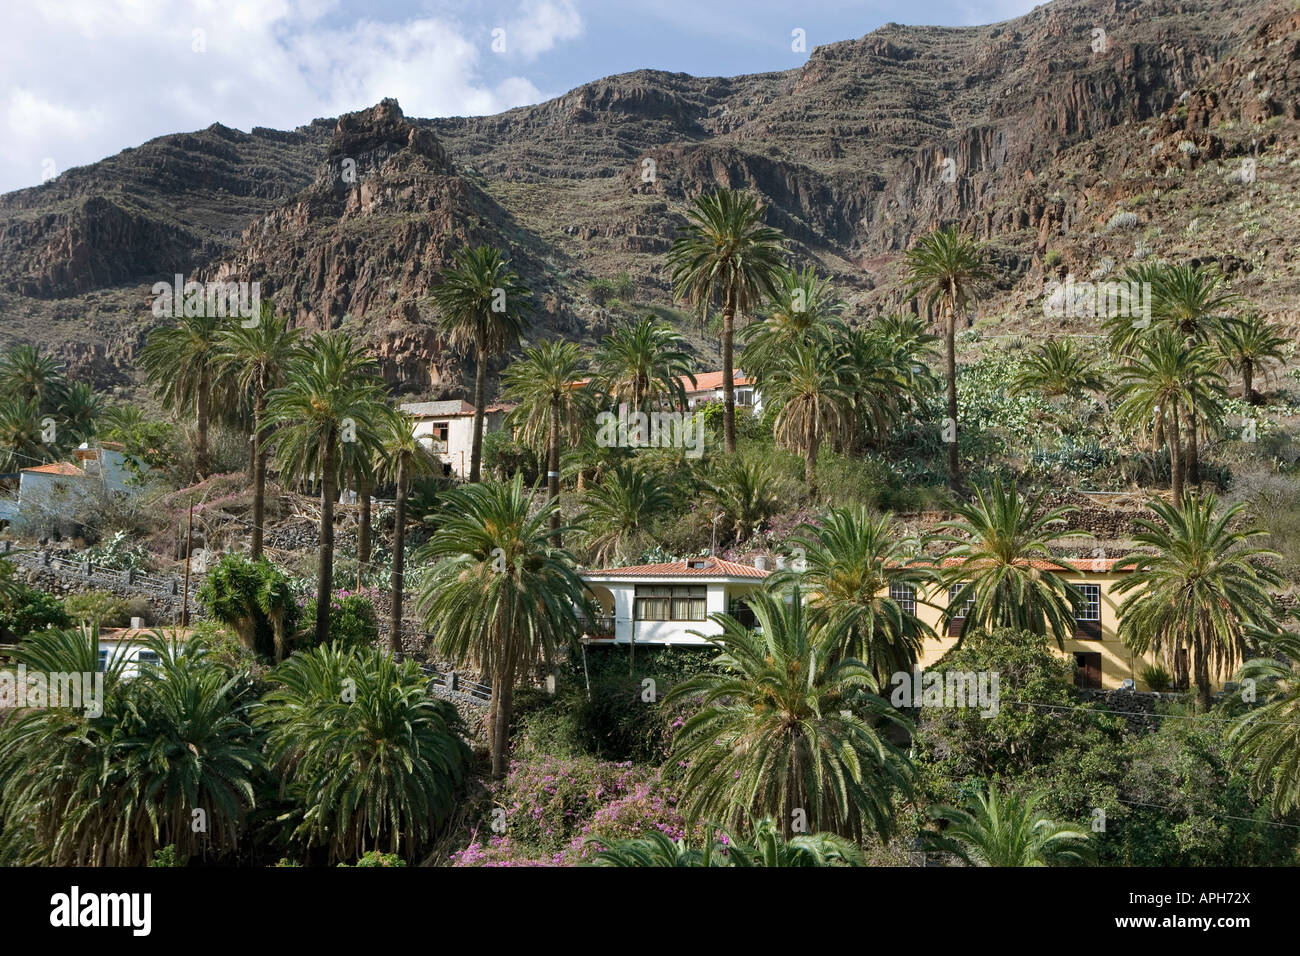 Vista di pittoresche case nel piccolo villaggio di El Guro nella valle Valle Gran Rey prevalentemente di lingua tedesca artisti vivono qui Foto Stock